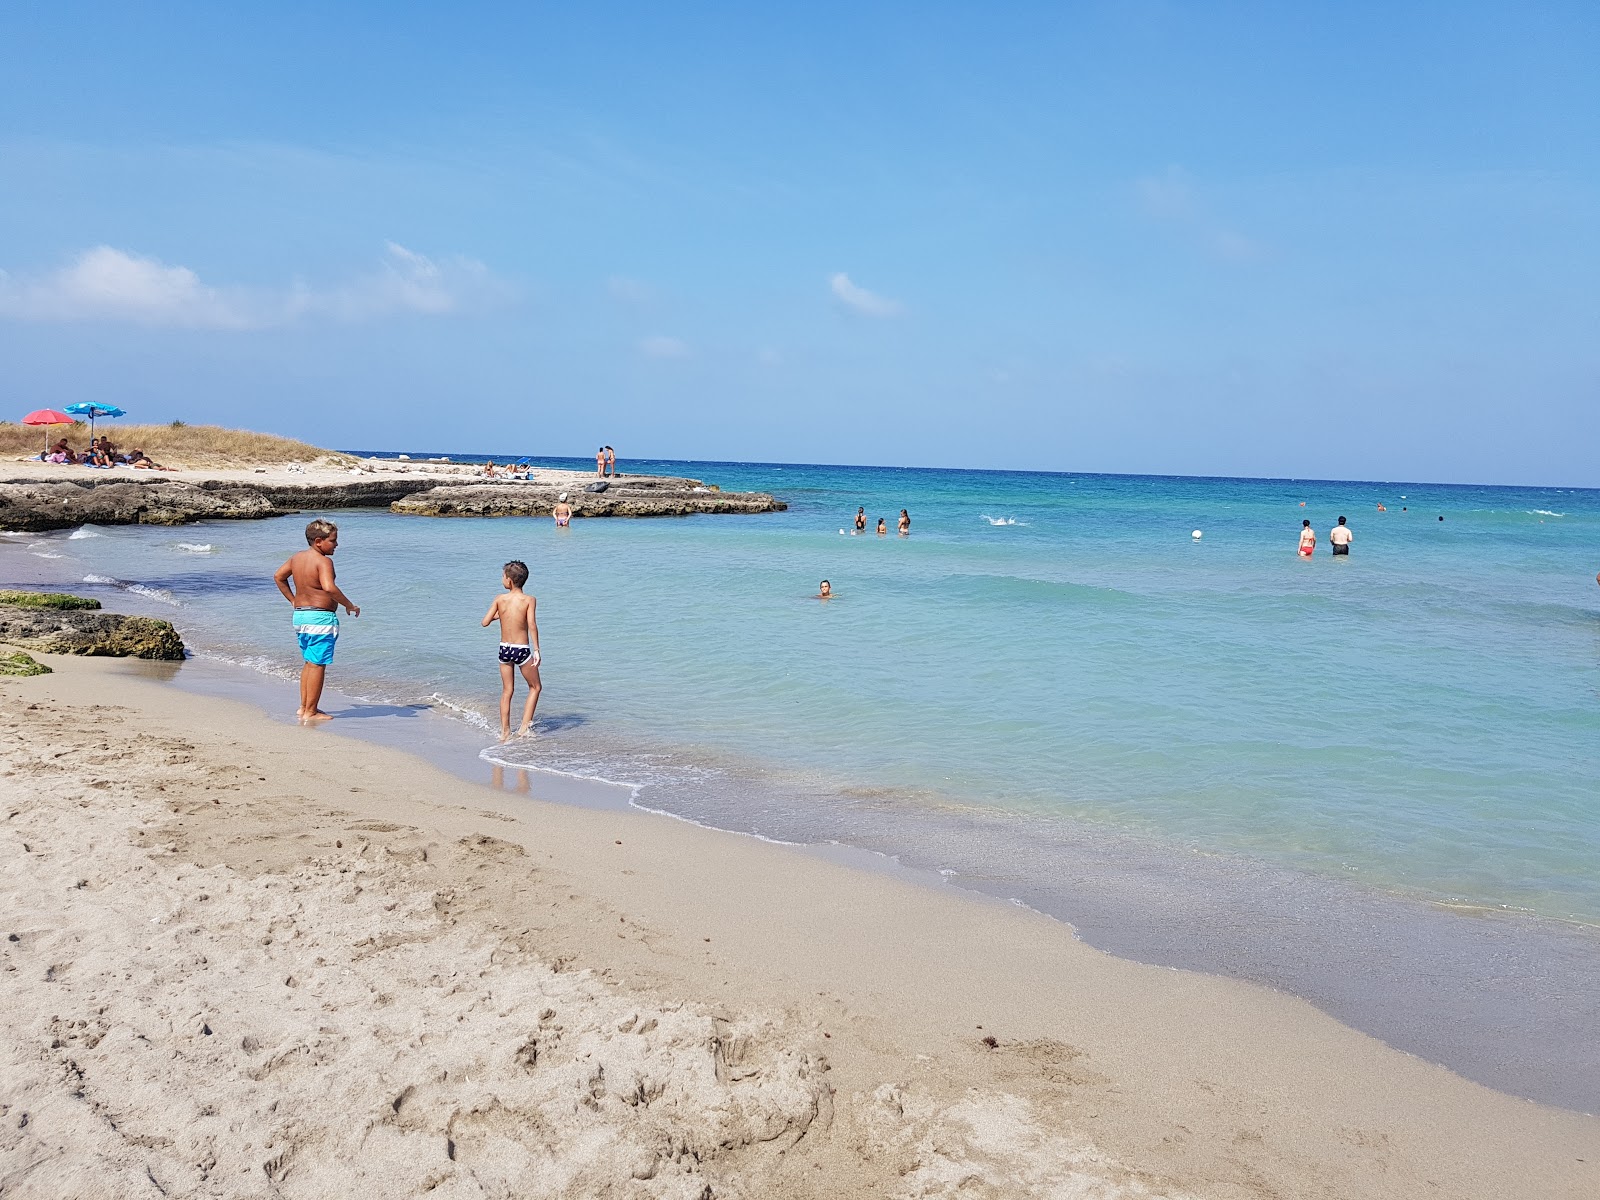 Photo of Spiaggia Mezzaluna with small bay